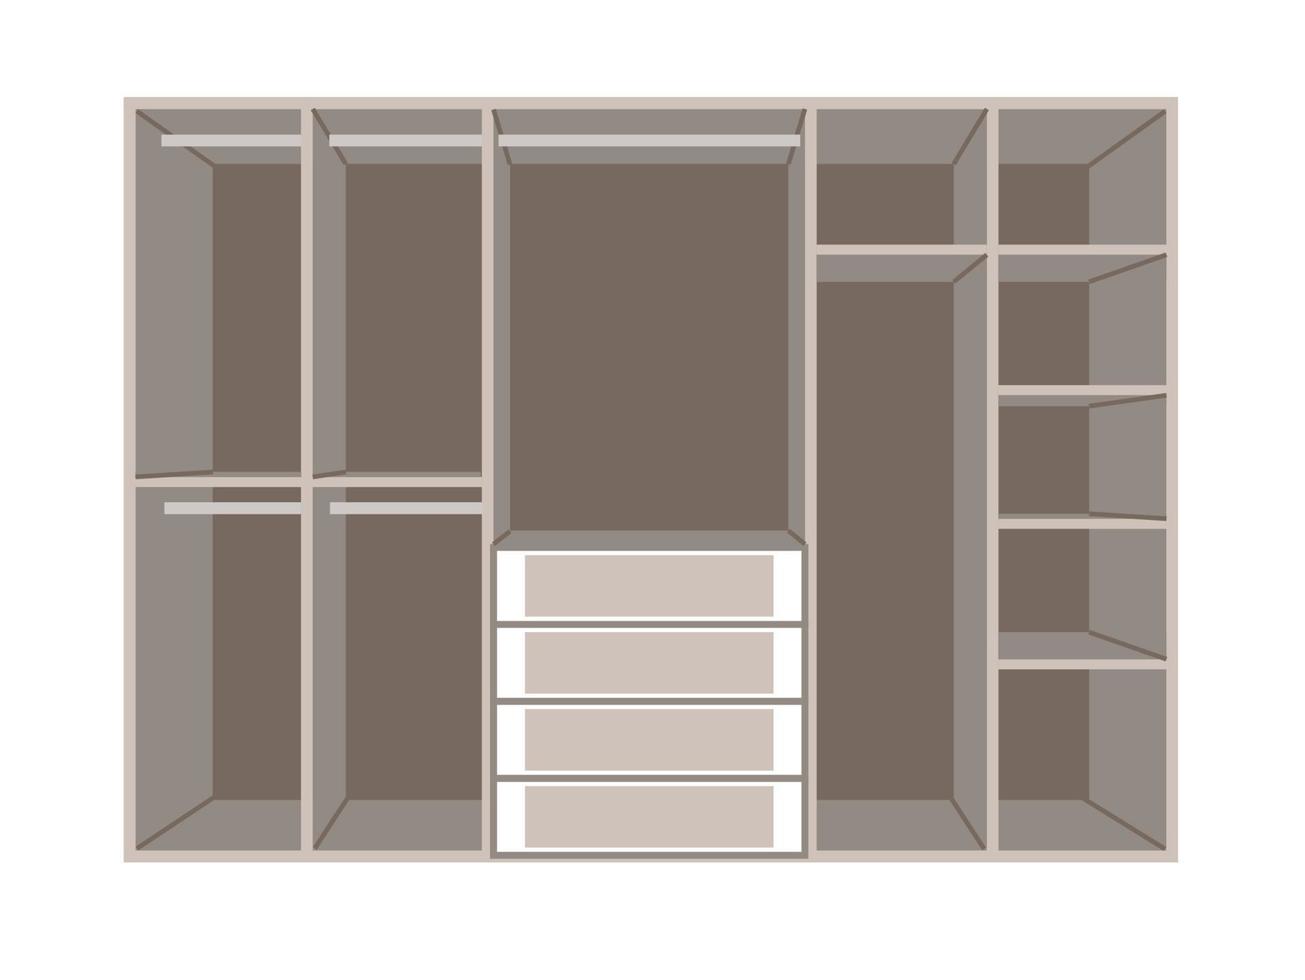 bande dessinée de garde-robe. armoire isolé sur fond blanc. armoire ouverte vide avec cintre, étagères et tiroirs. vecteur